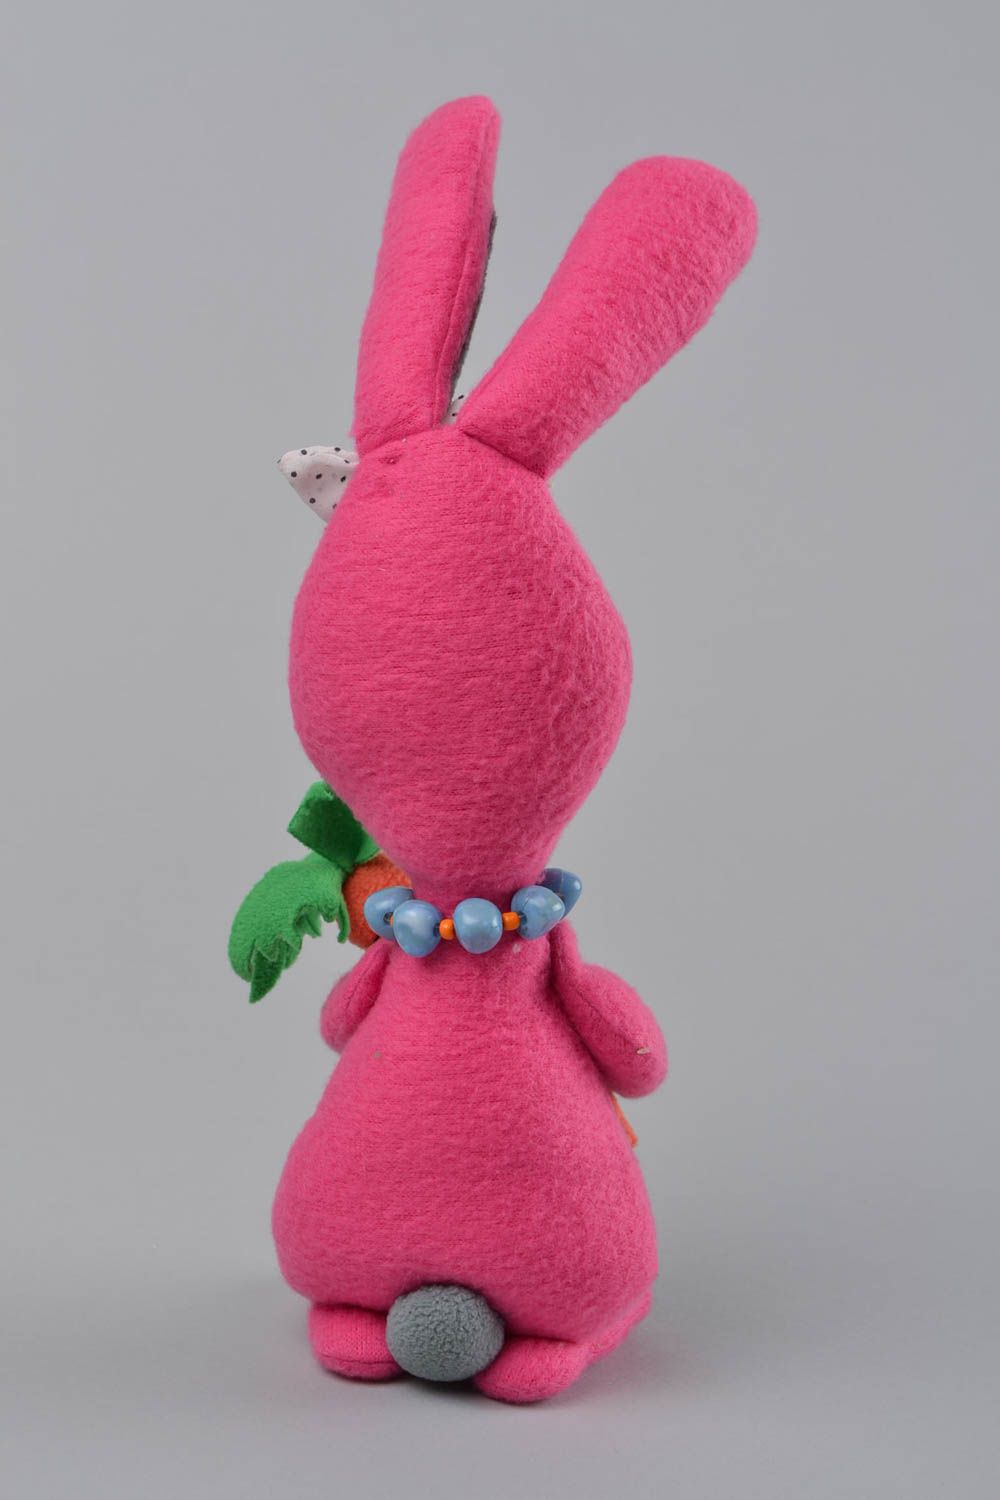 Handmade Kuscheltier Hase in Rosa aus Fleece knuddelig schön Kuschel Spielzeug foto 5